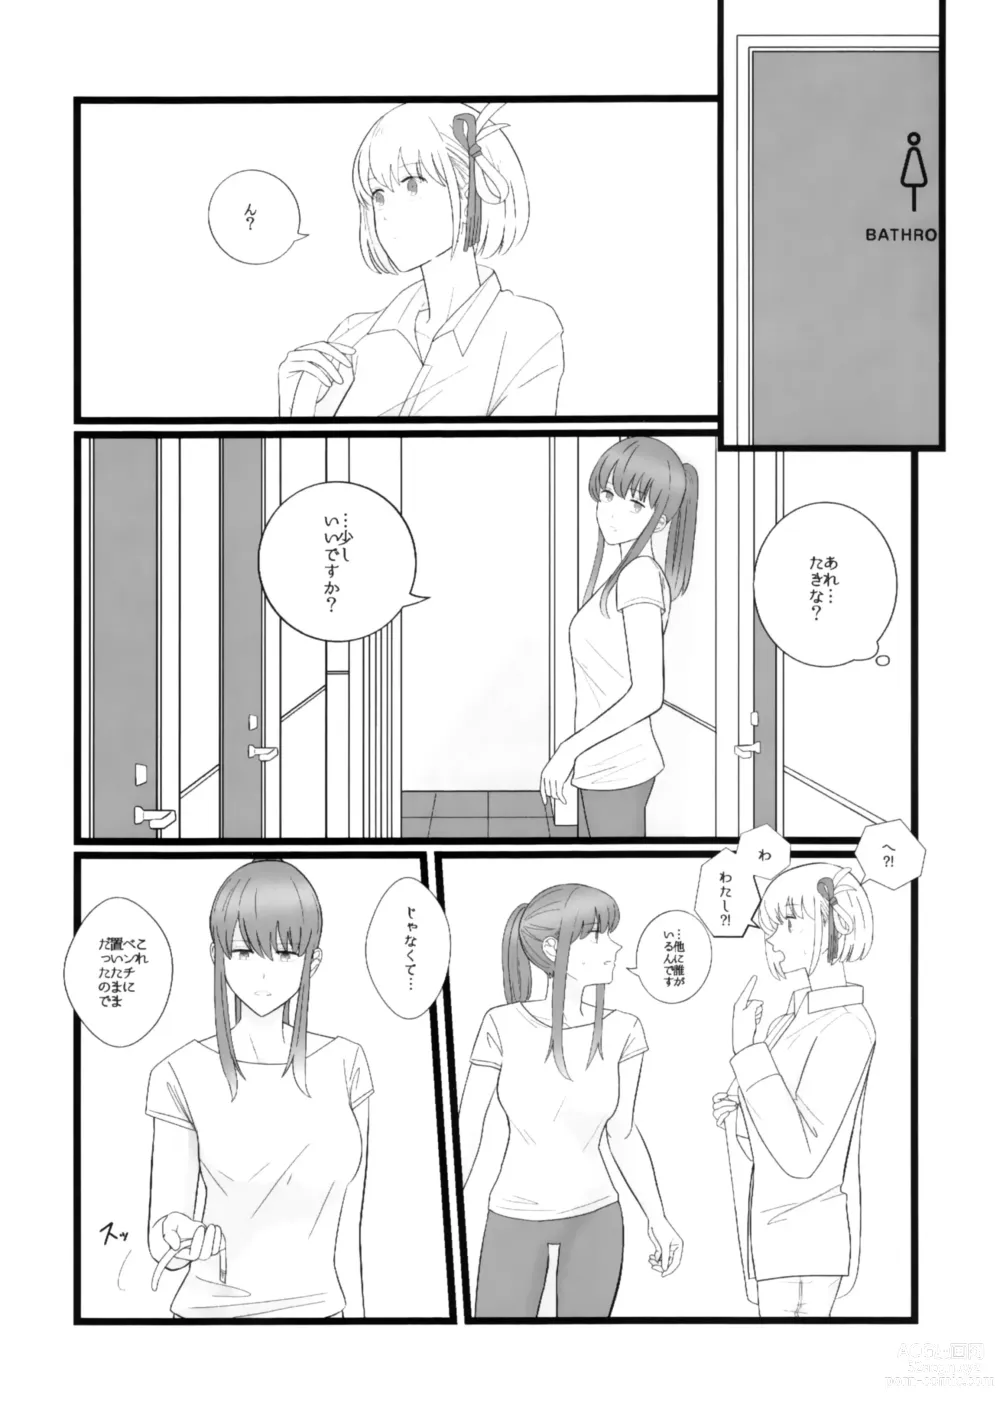 Page 6 of doujinshi Takina to Chisato.